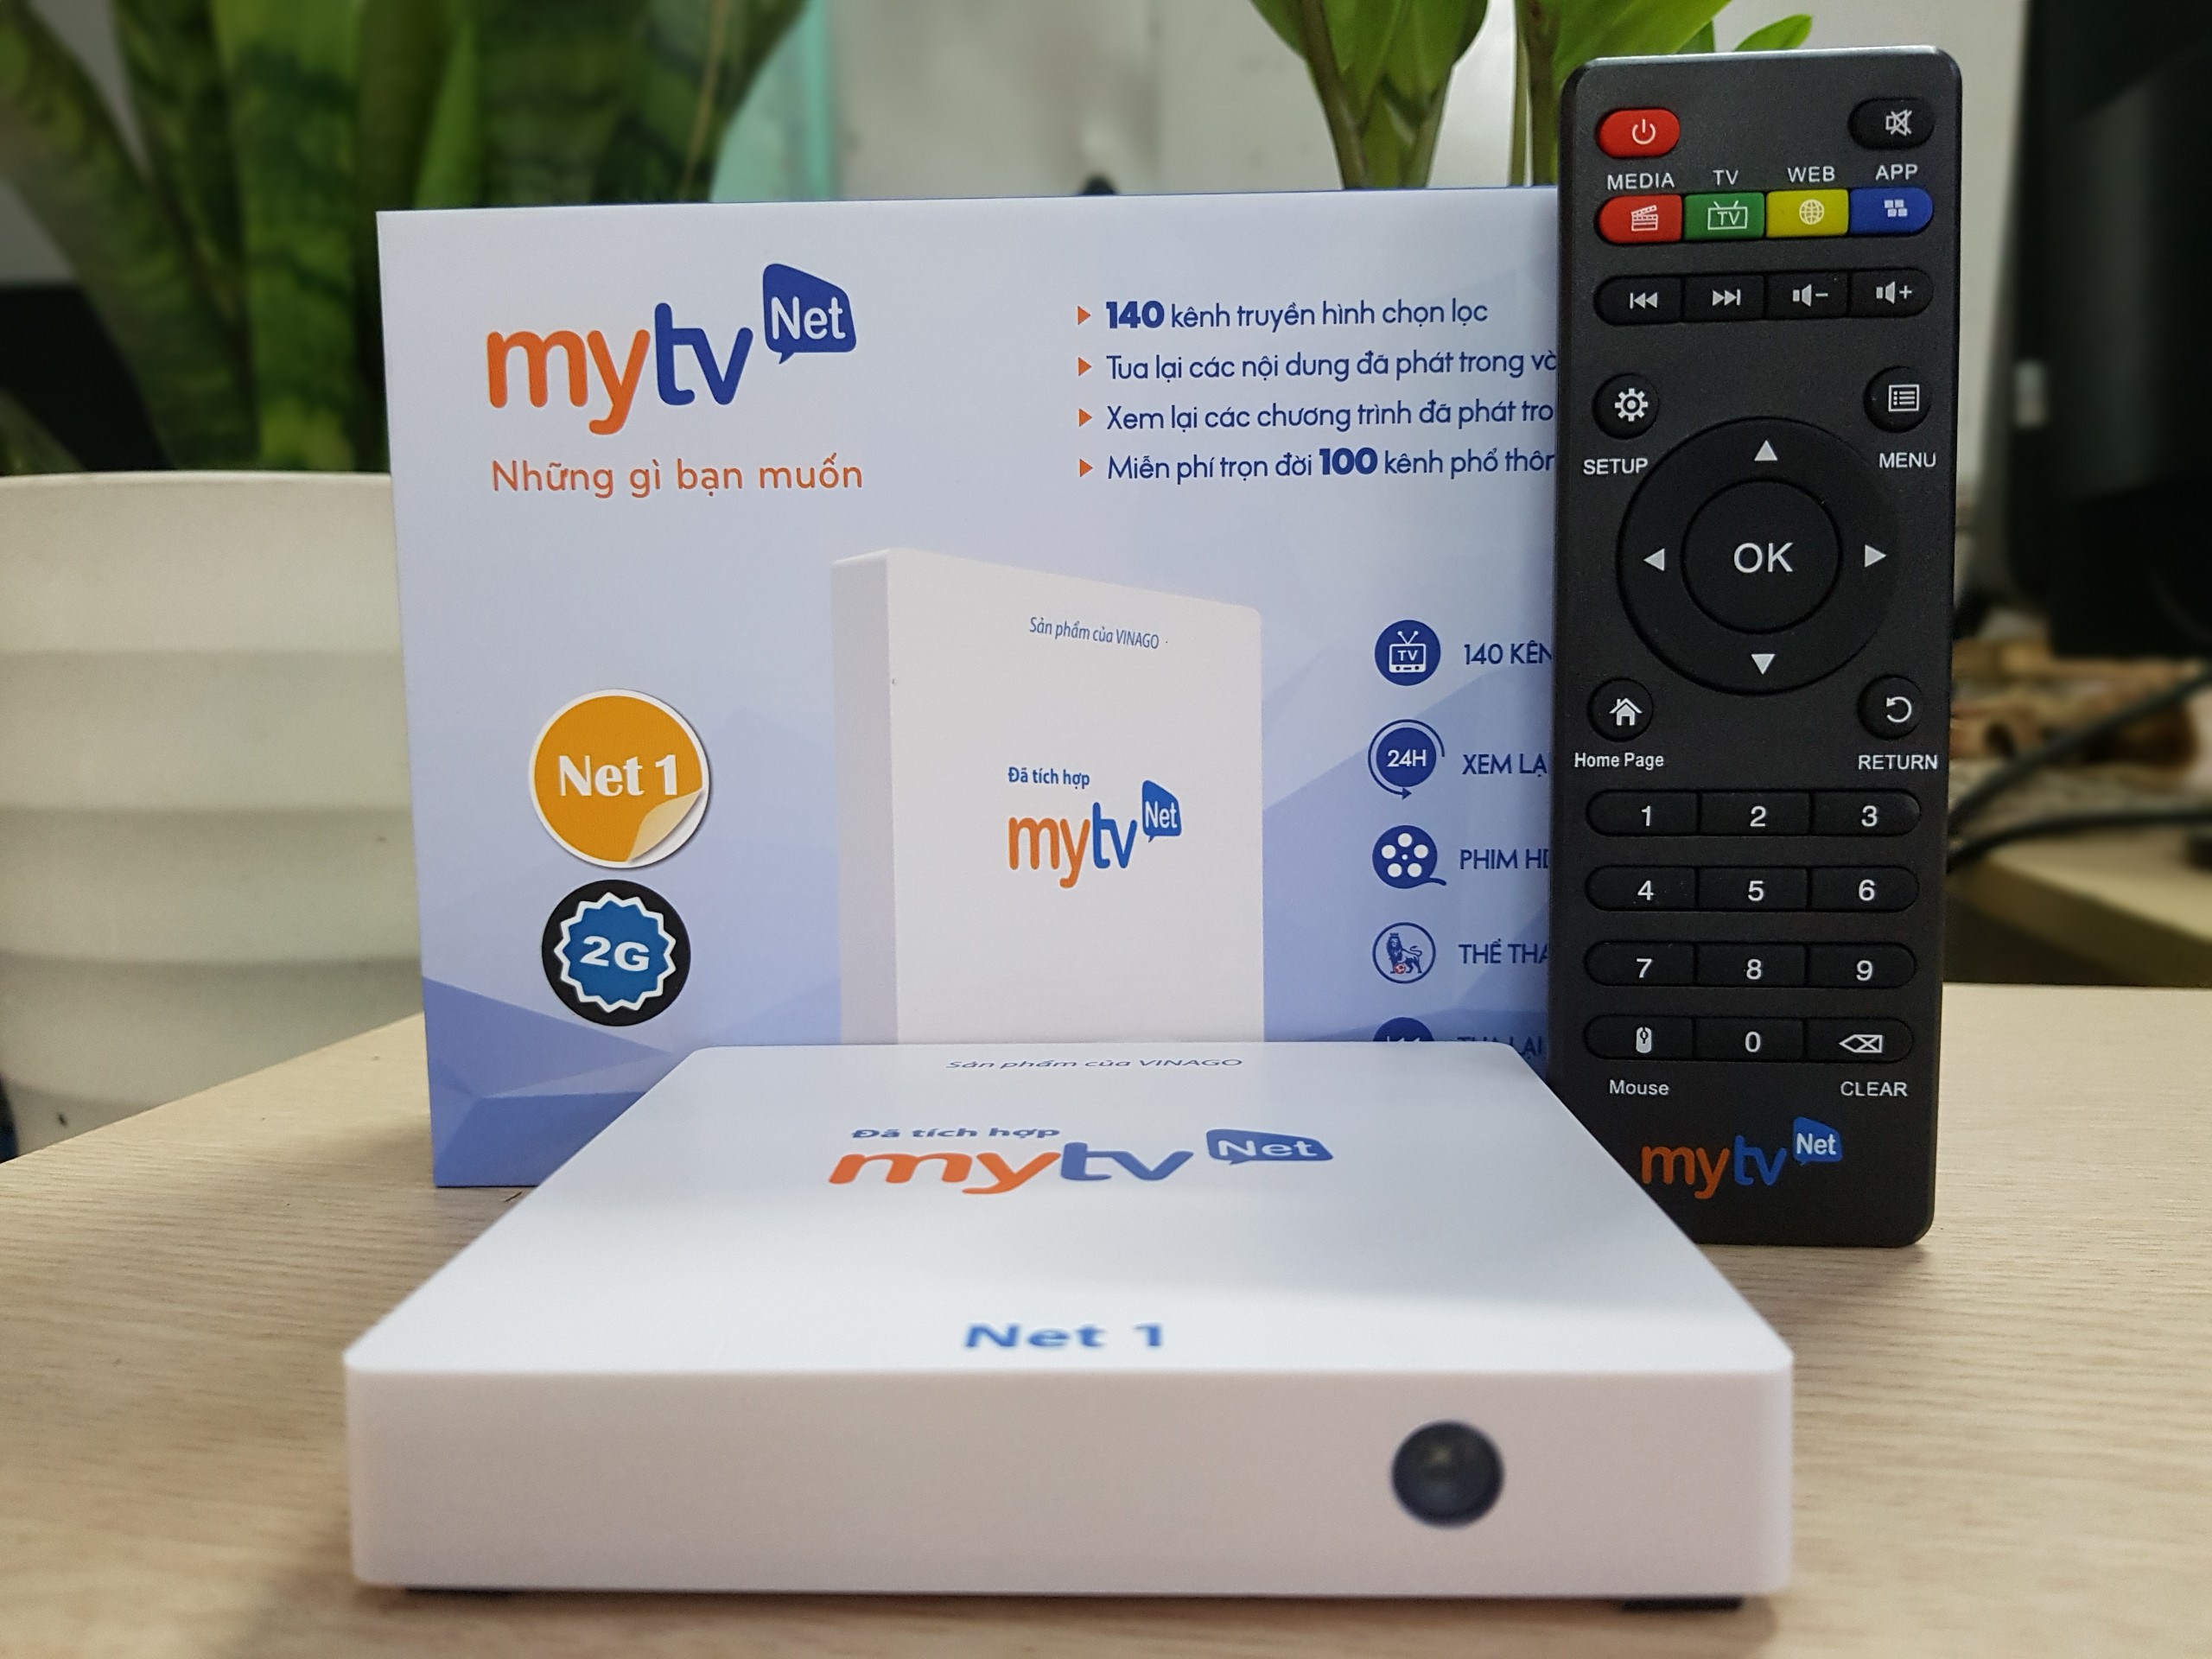 Android MyTV Net RAM 2G-2020 Tặng  HDplay, Android 7.1.2  điều khiển Giọng nói KM680V- Hàng chính hãng